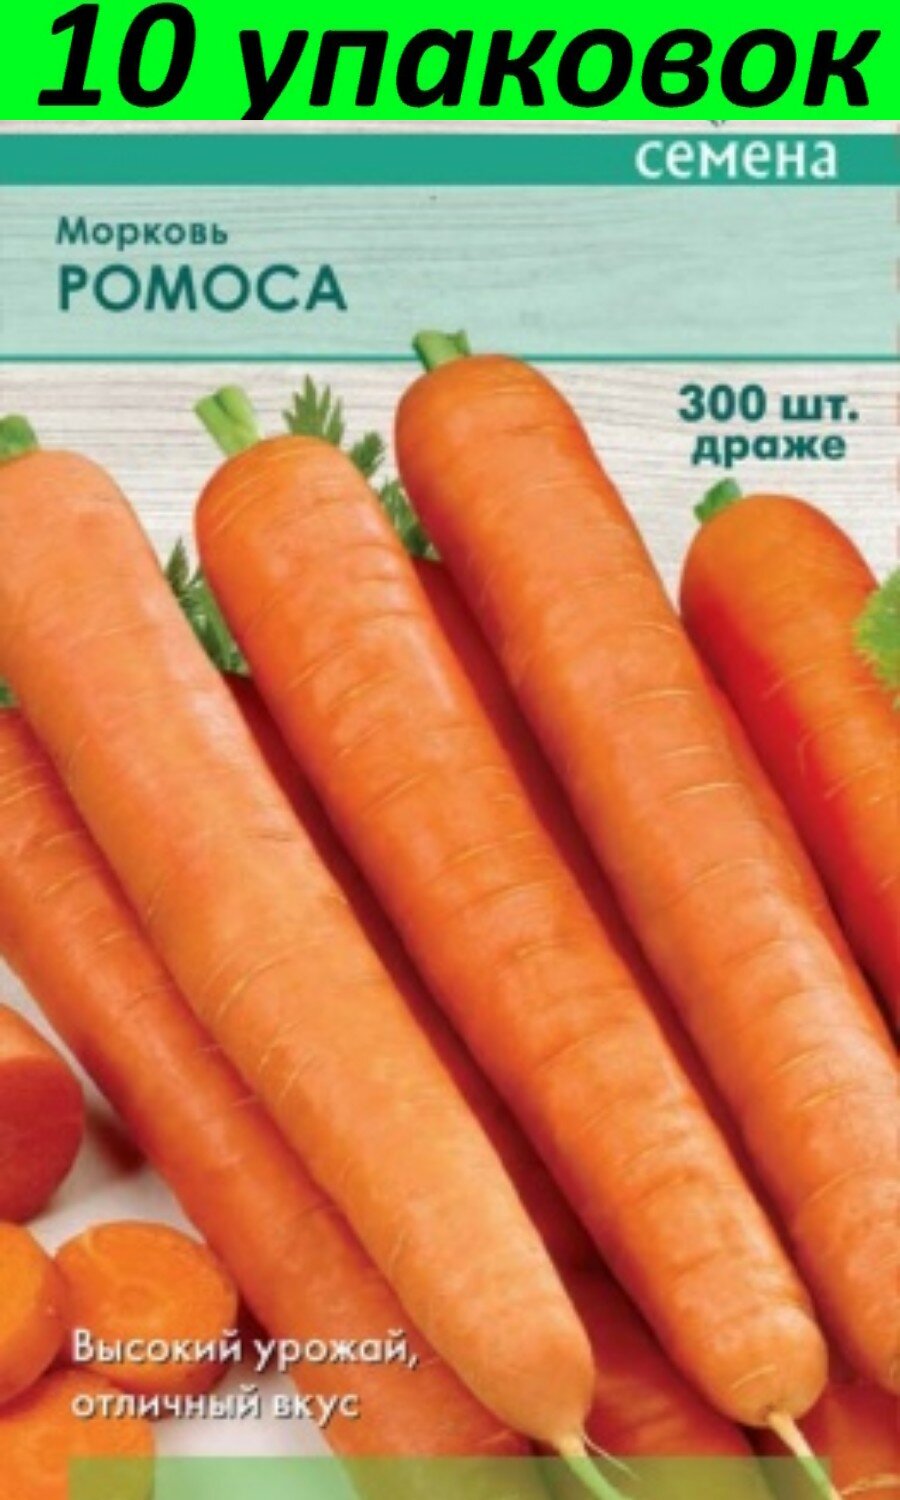 Семена Морковь гранулы Ромоса 10уп по 300шт (Поиск)